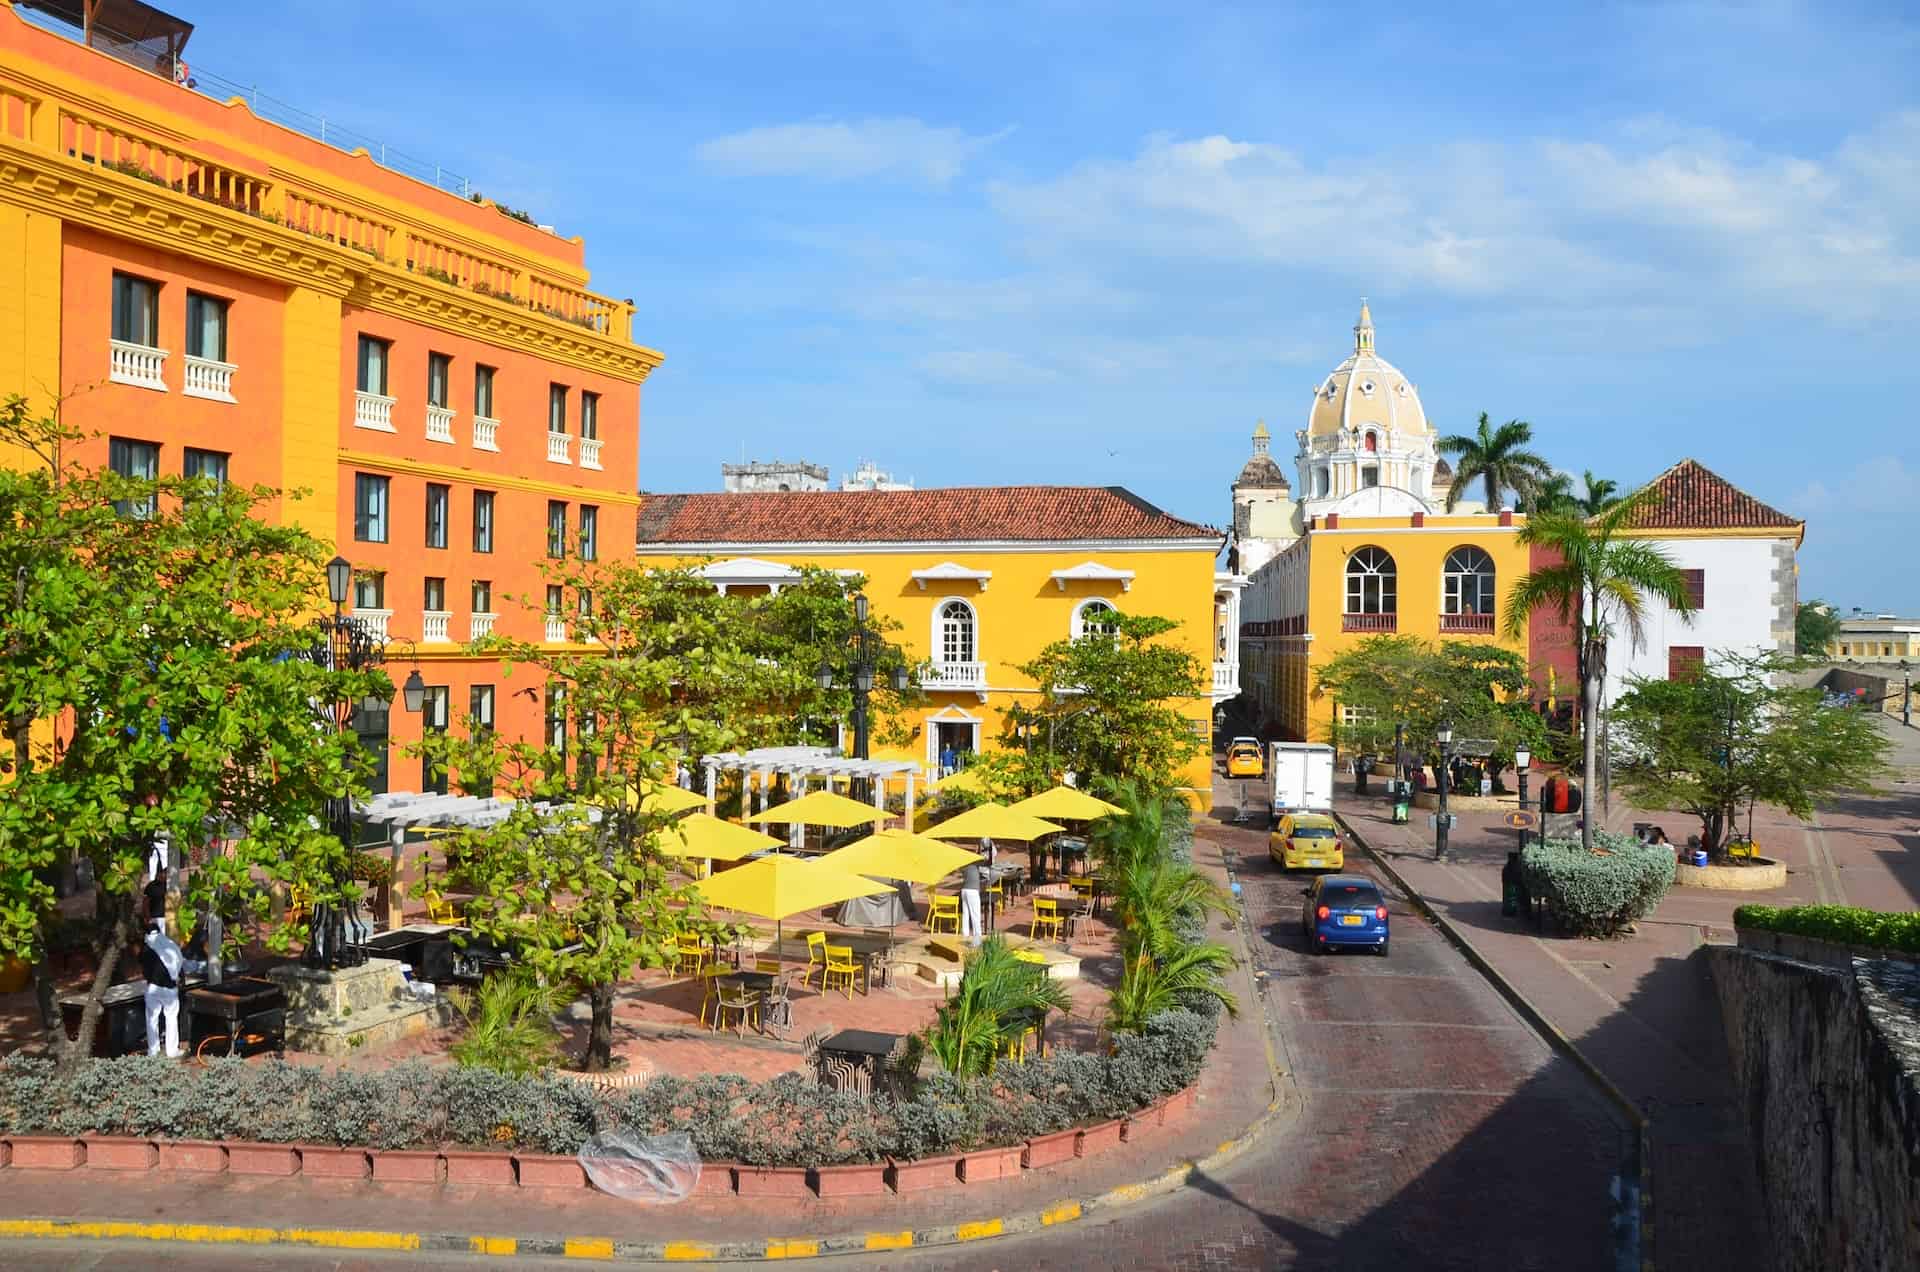 Plaza de Santa Teresa in El Centro, Cartagena, Colombia